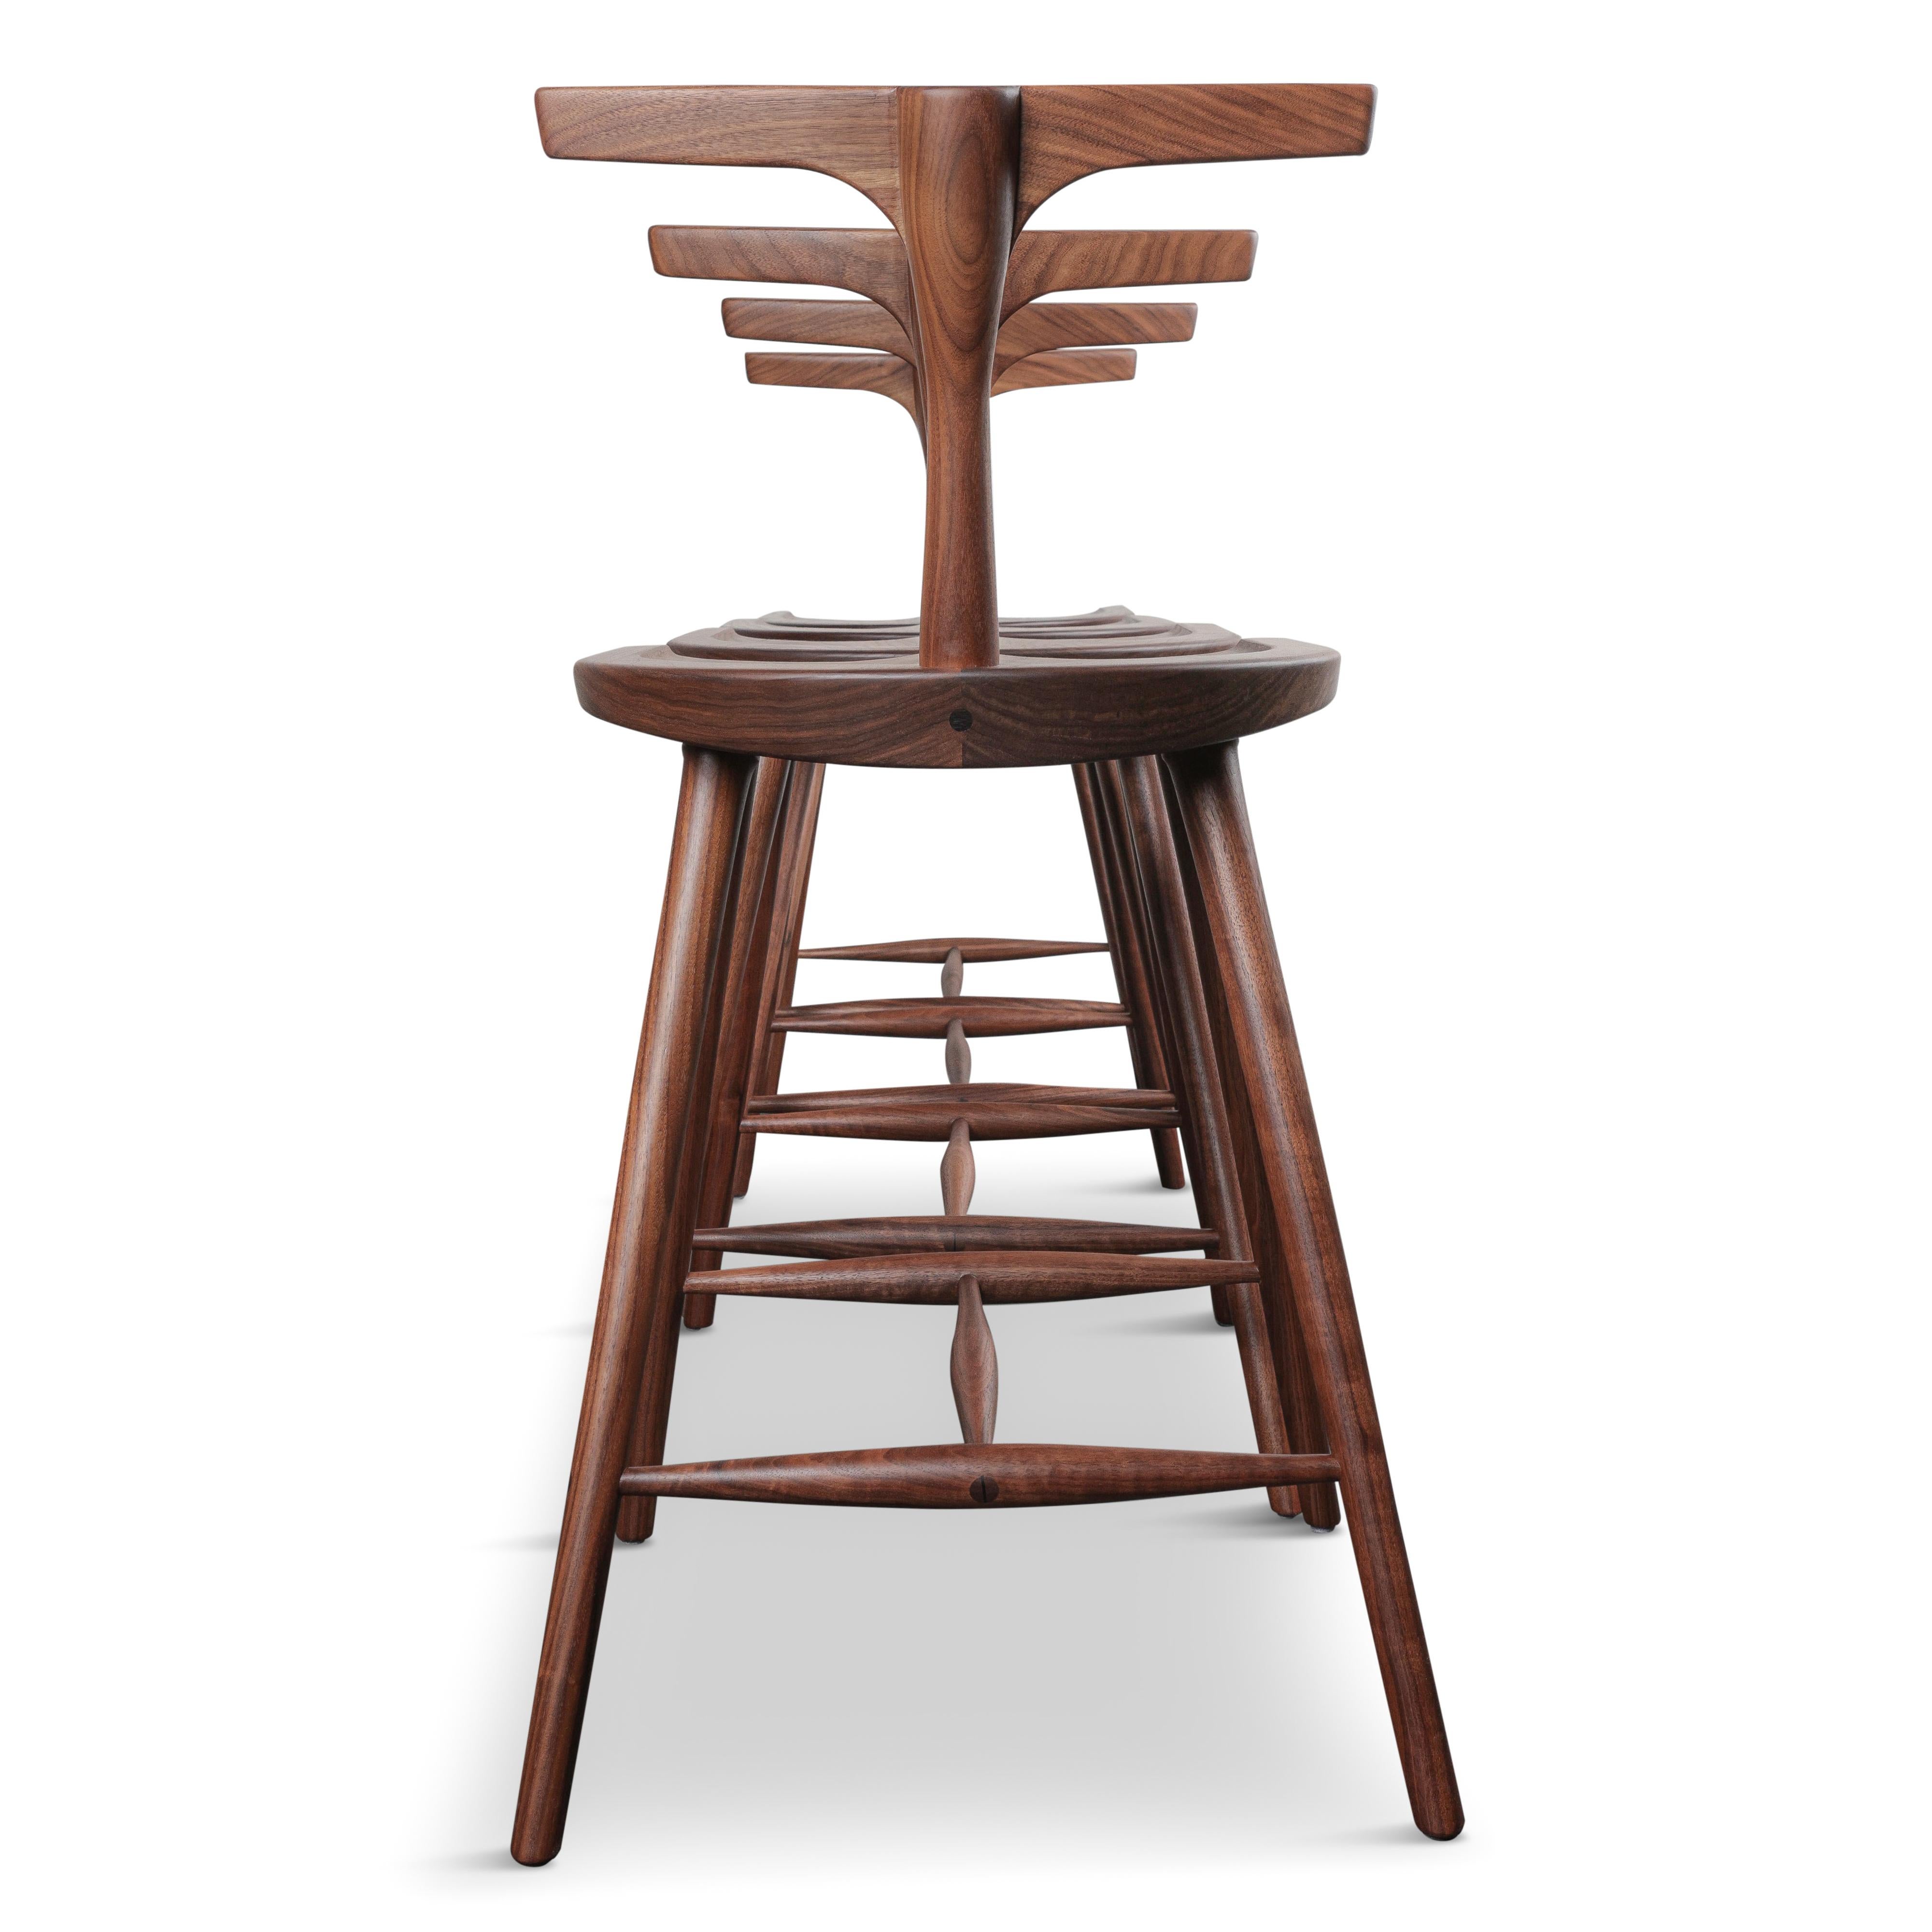 3 legged stool with back